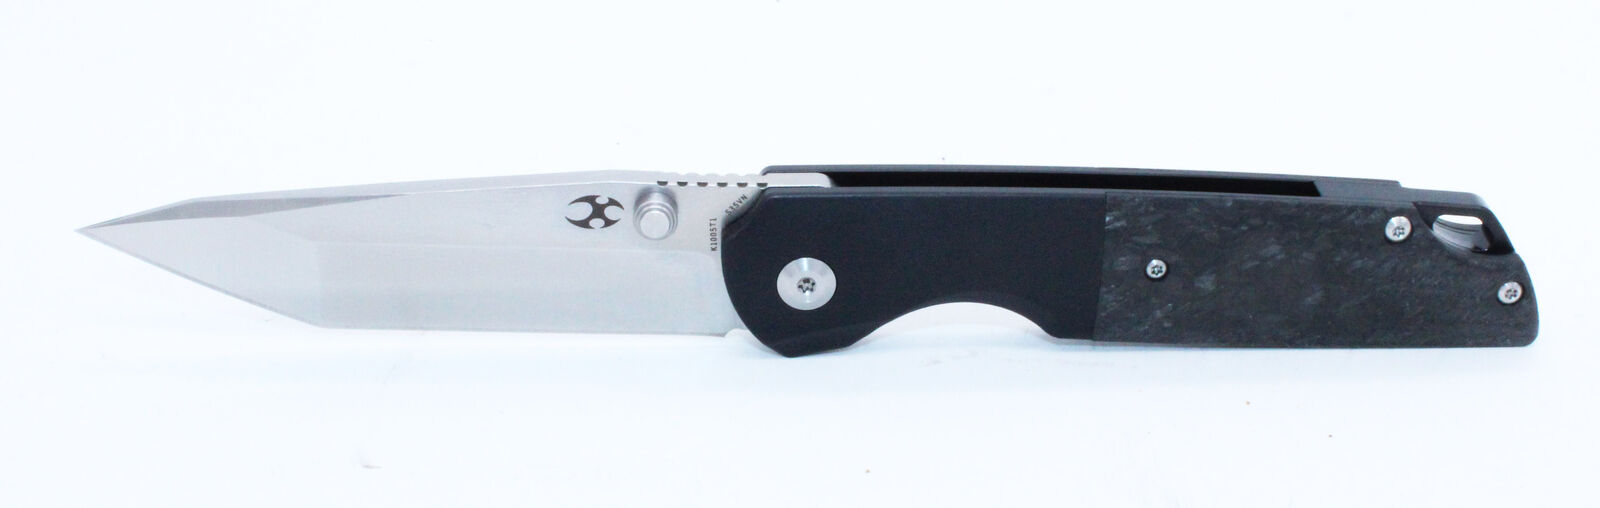 Kansept Warrior Folder Knife Black Ti + CF Handle Tanto S35VN Blade K1005T1